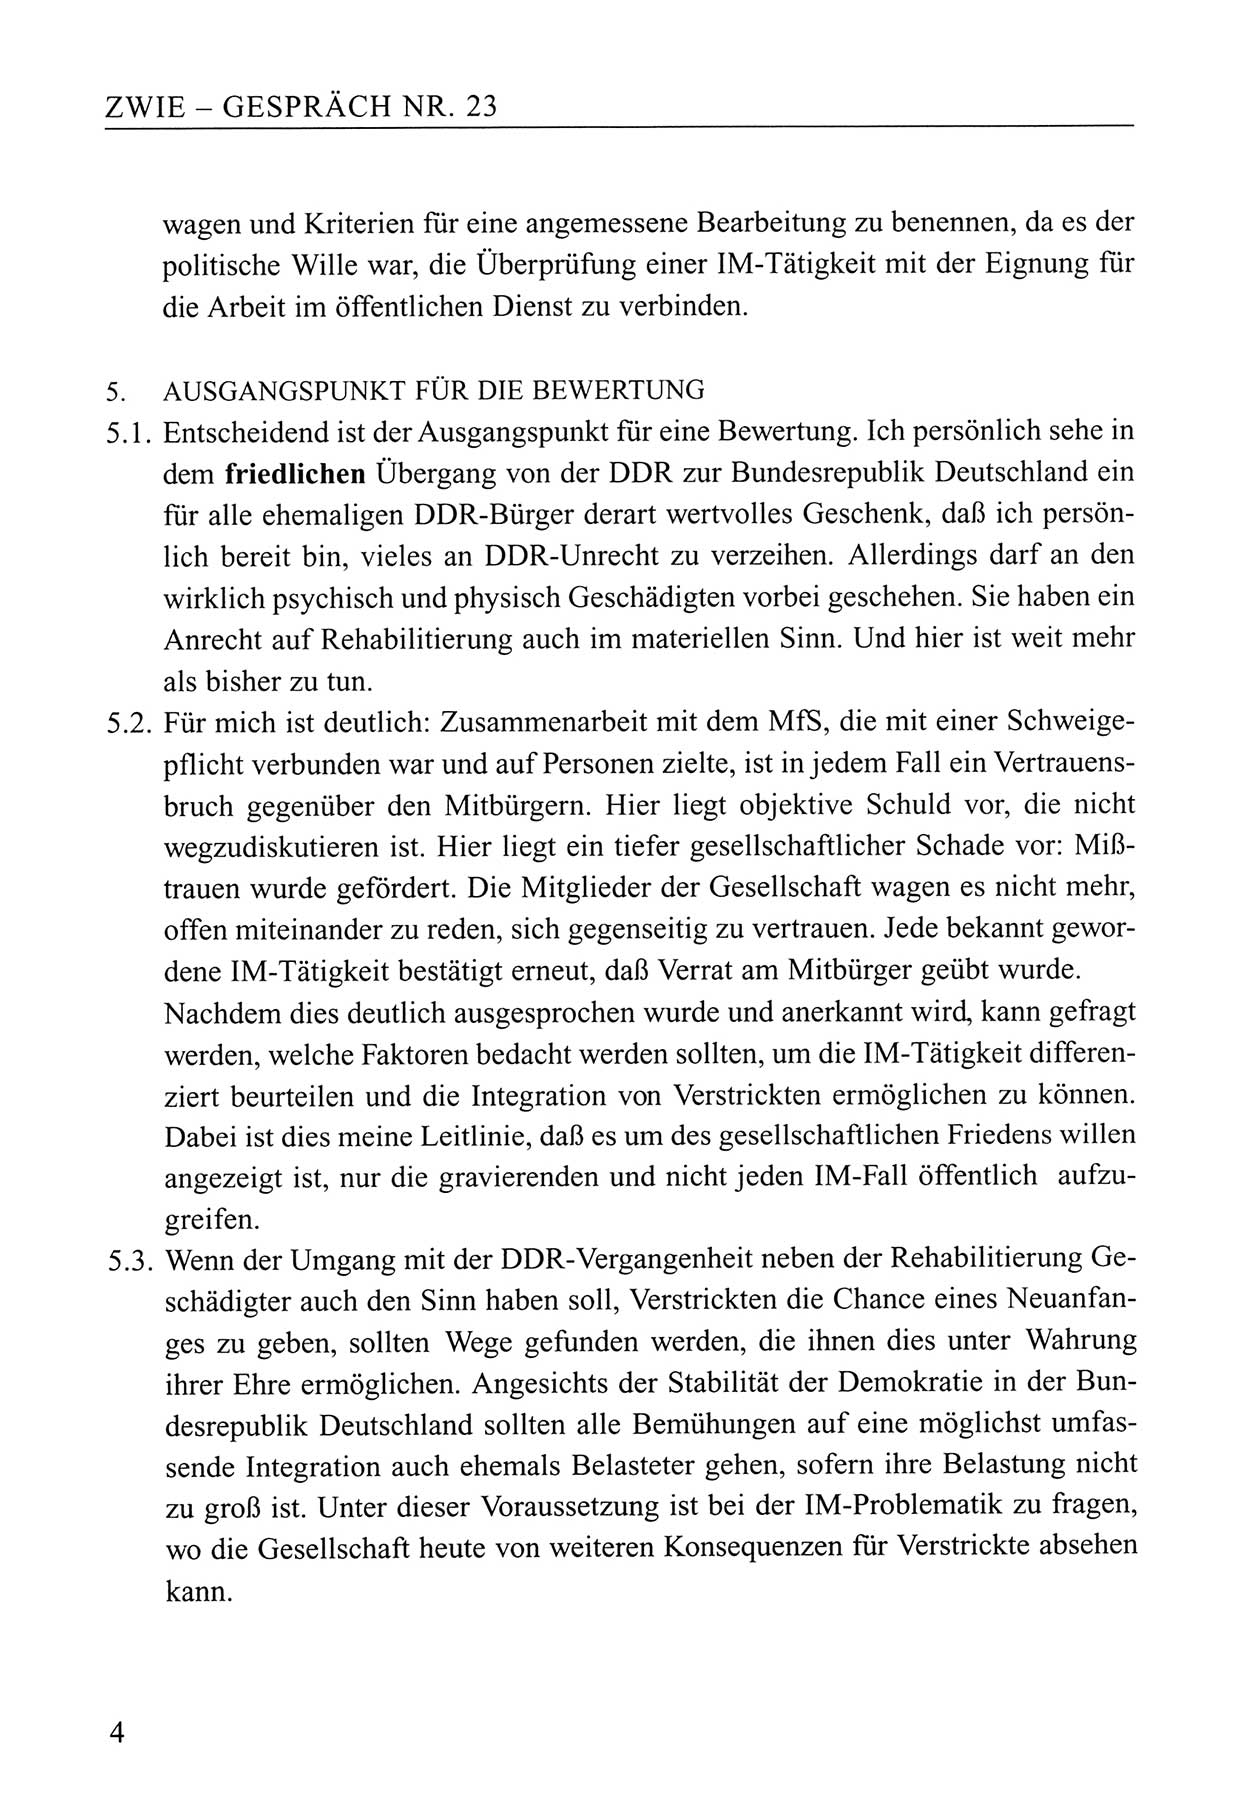 Zwie-Gespräch, Beiträge zum Umgang mit der Staatssicherheits-Vergangenheit [Deutsche Demokratische Republik (DDR)], Ausgabe Nr. 23, Berlin 1994, Seite 4 (Zwie-Gespr. Ausg. 23 1994, S. 4)